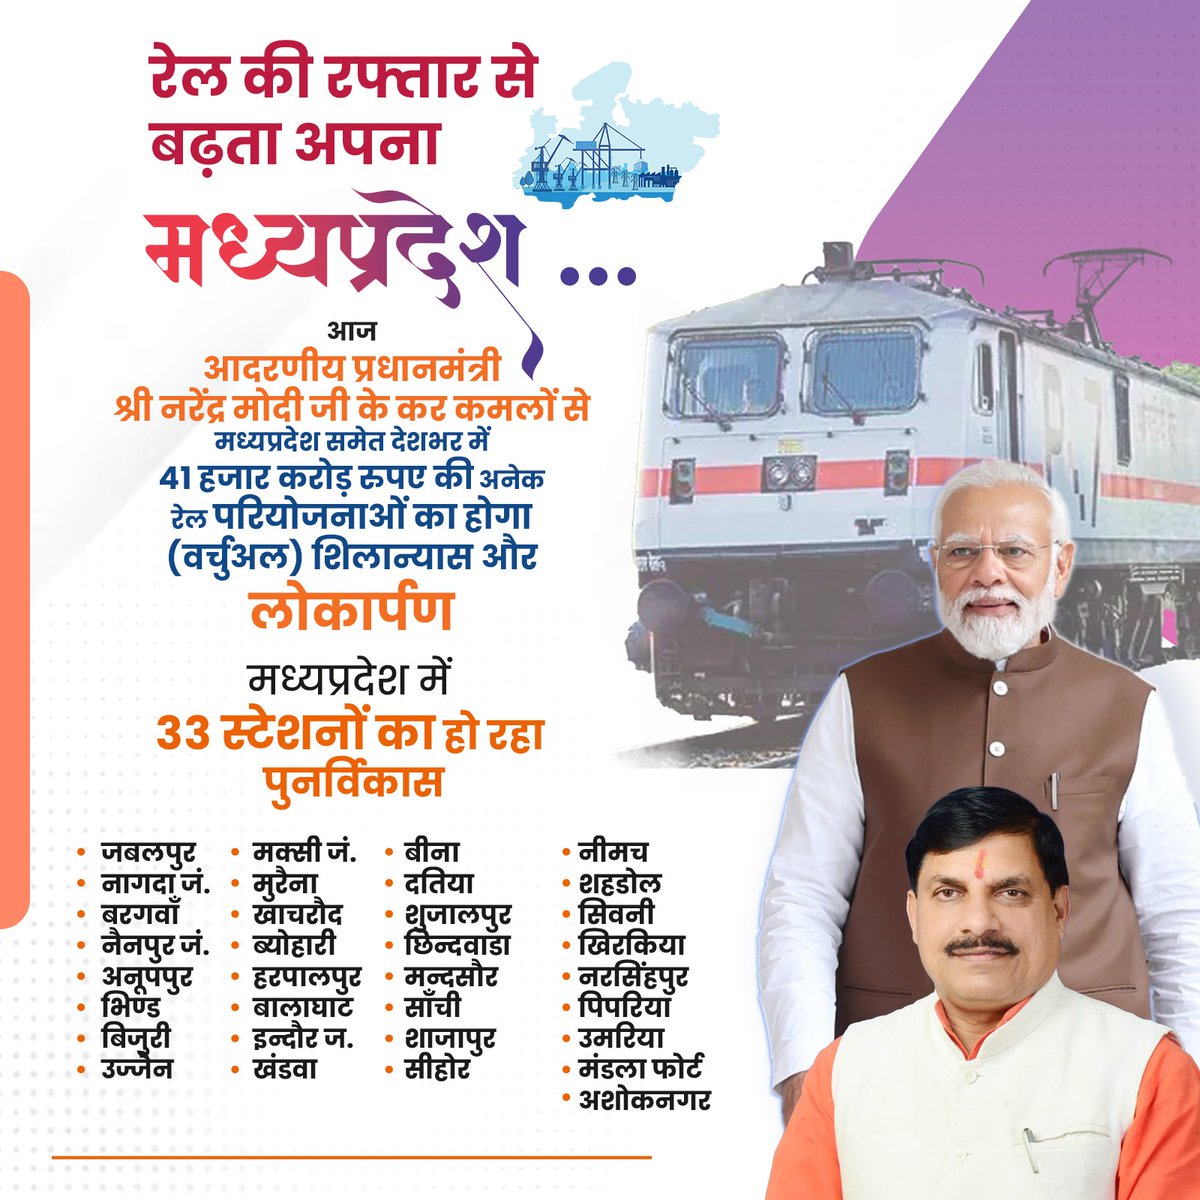 रेल की रफ्तार से बढ़ता अपना मध्यप्रदेश... मध्यप्रदेश समेत देशभर के लिए आज सौगातों का दिन, आदरणीय प्रधानमंत्री श्री @narendramodi जी के कर कमलों से 41 हजार करोड़ रुपए की अनेक रेल परियोजनाओं का (वर्चुअली) शिलान्यास और लोकार्पण होगा। ये रेलवे स्टेशन सिटी सेंटर के रूप में विकसित